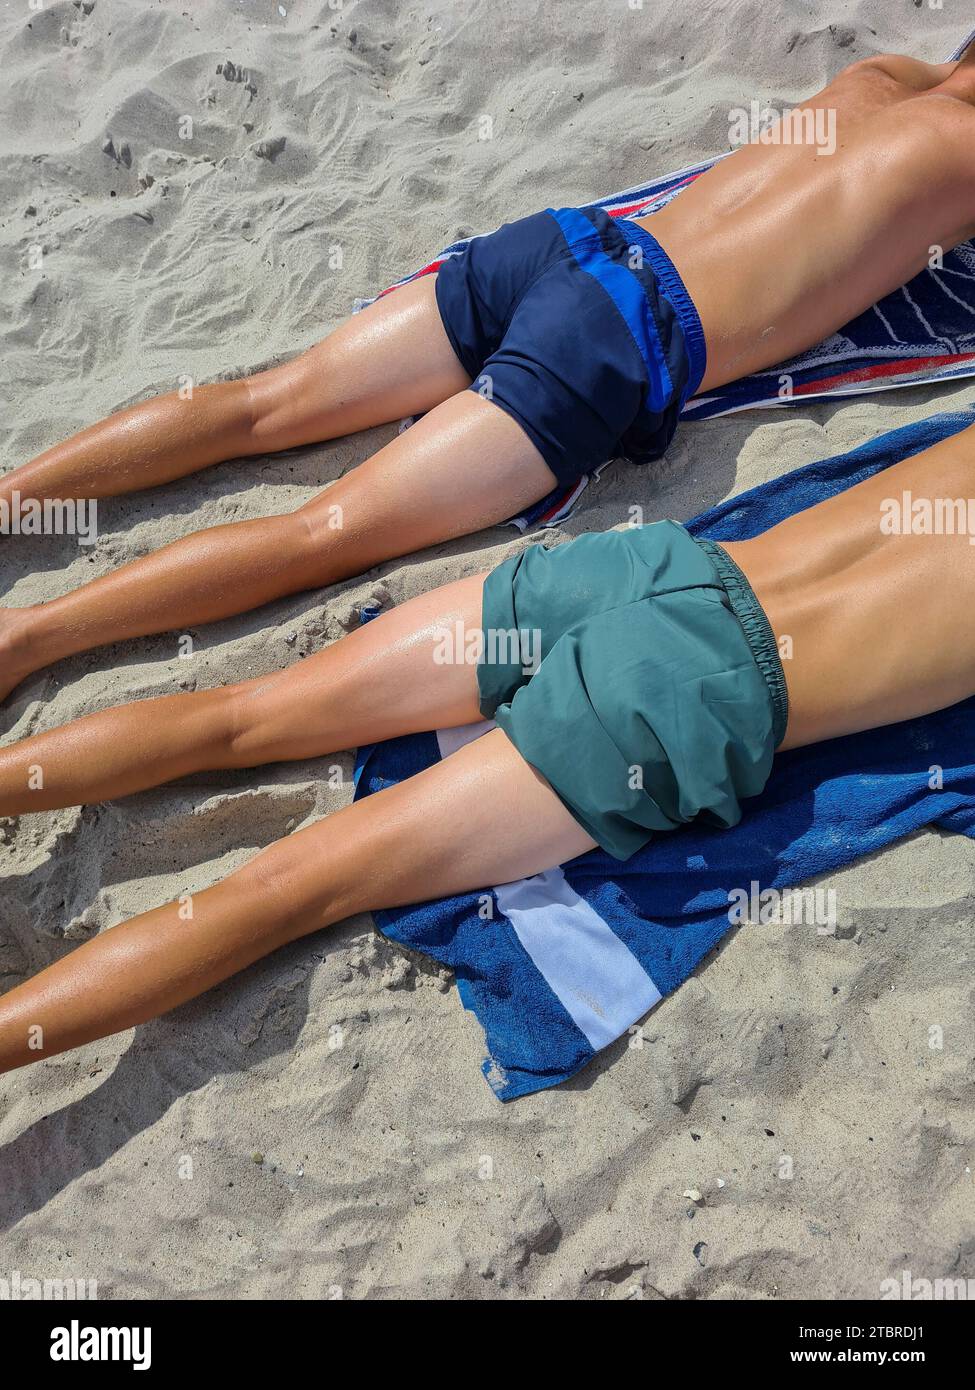 Germania, Meclemburgo-Pomerania occidentale, penisola Fischland-Darß-Zingst, Prerow, adolescenti in costume da bagno prendere il sole sulla spiaggia Foto Stock